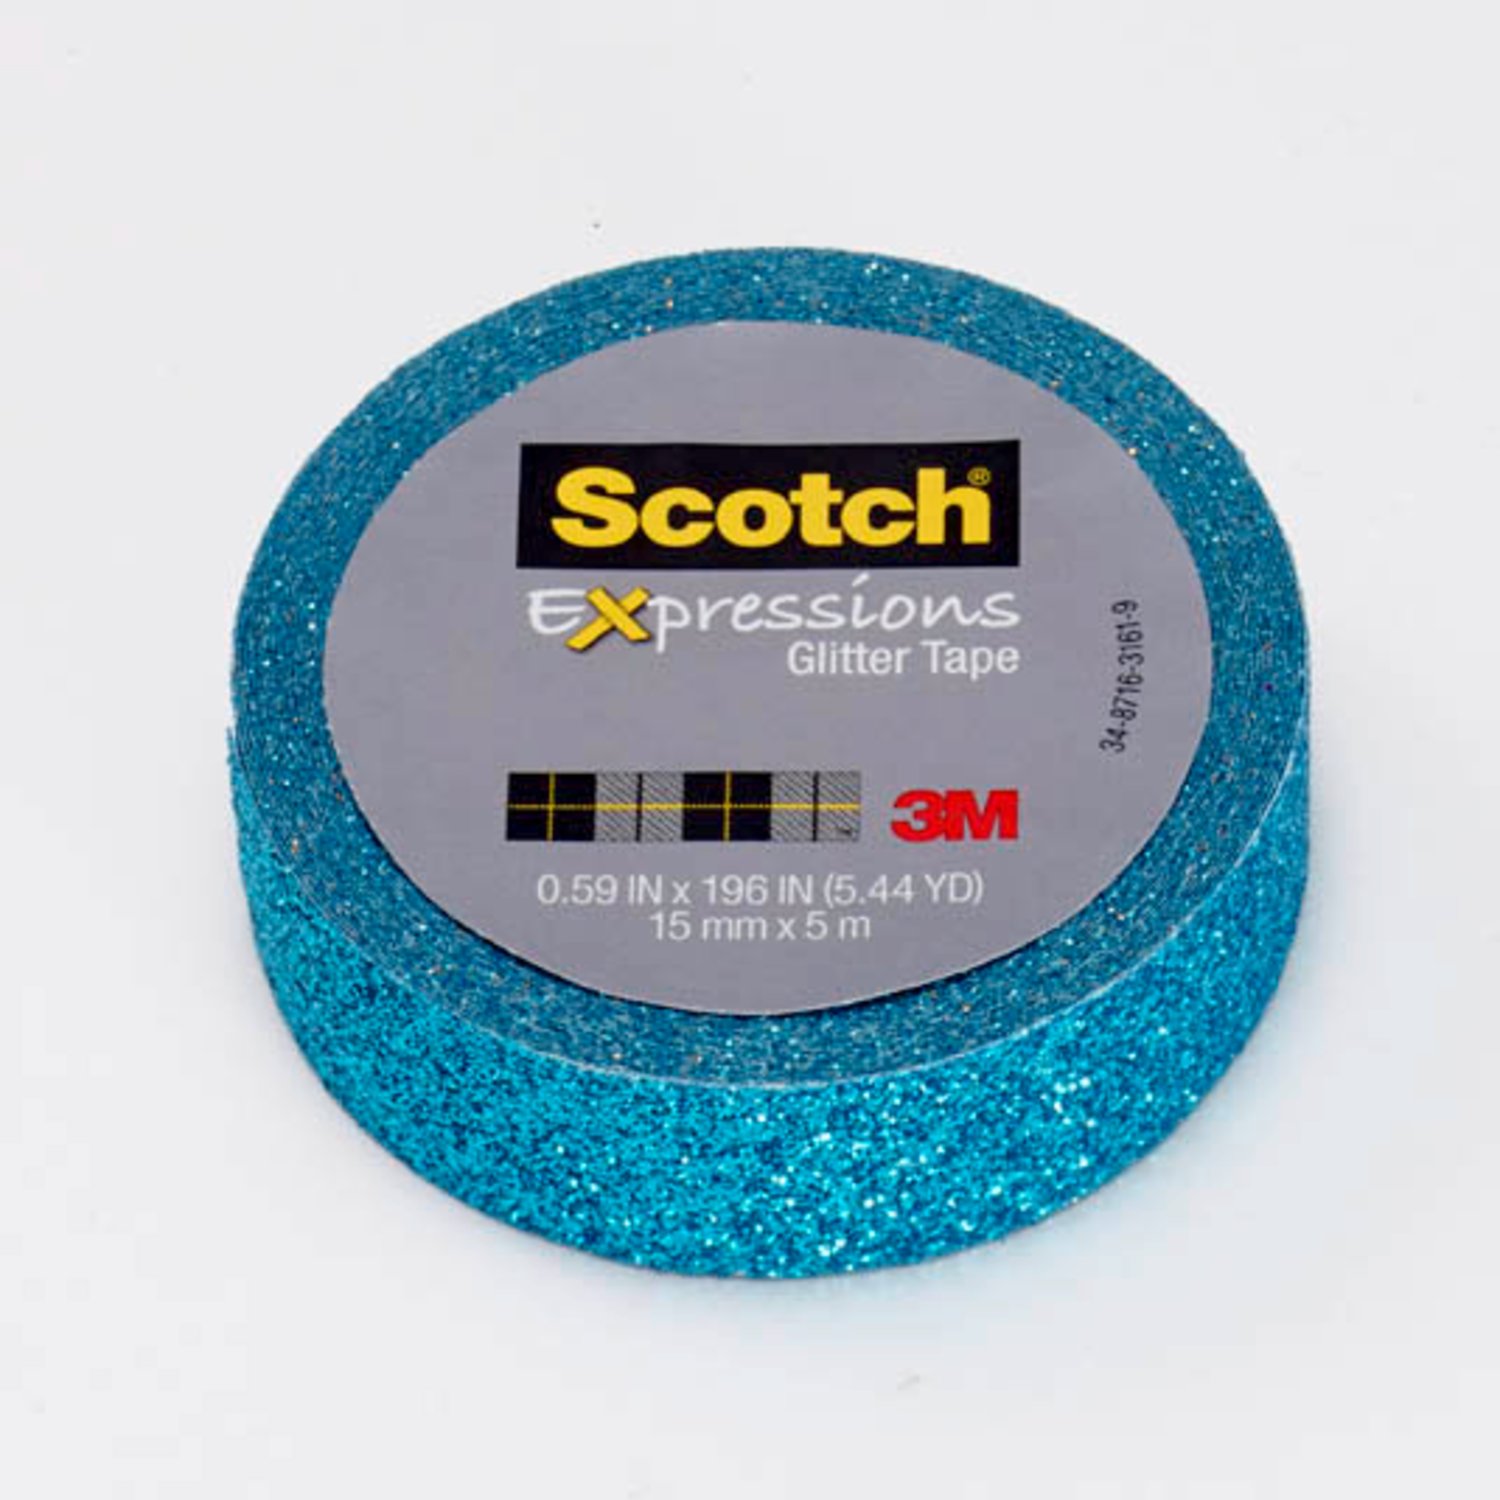 7100141130 - Scotch Expressions Glitter Tape C514-BLU, .59 in x 196 in (15 mm x 5 m)
Teal Blue Glitter